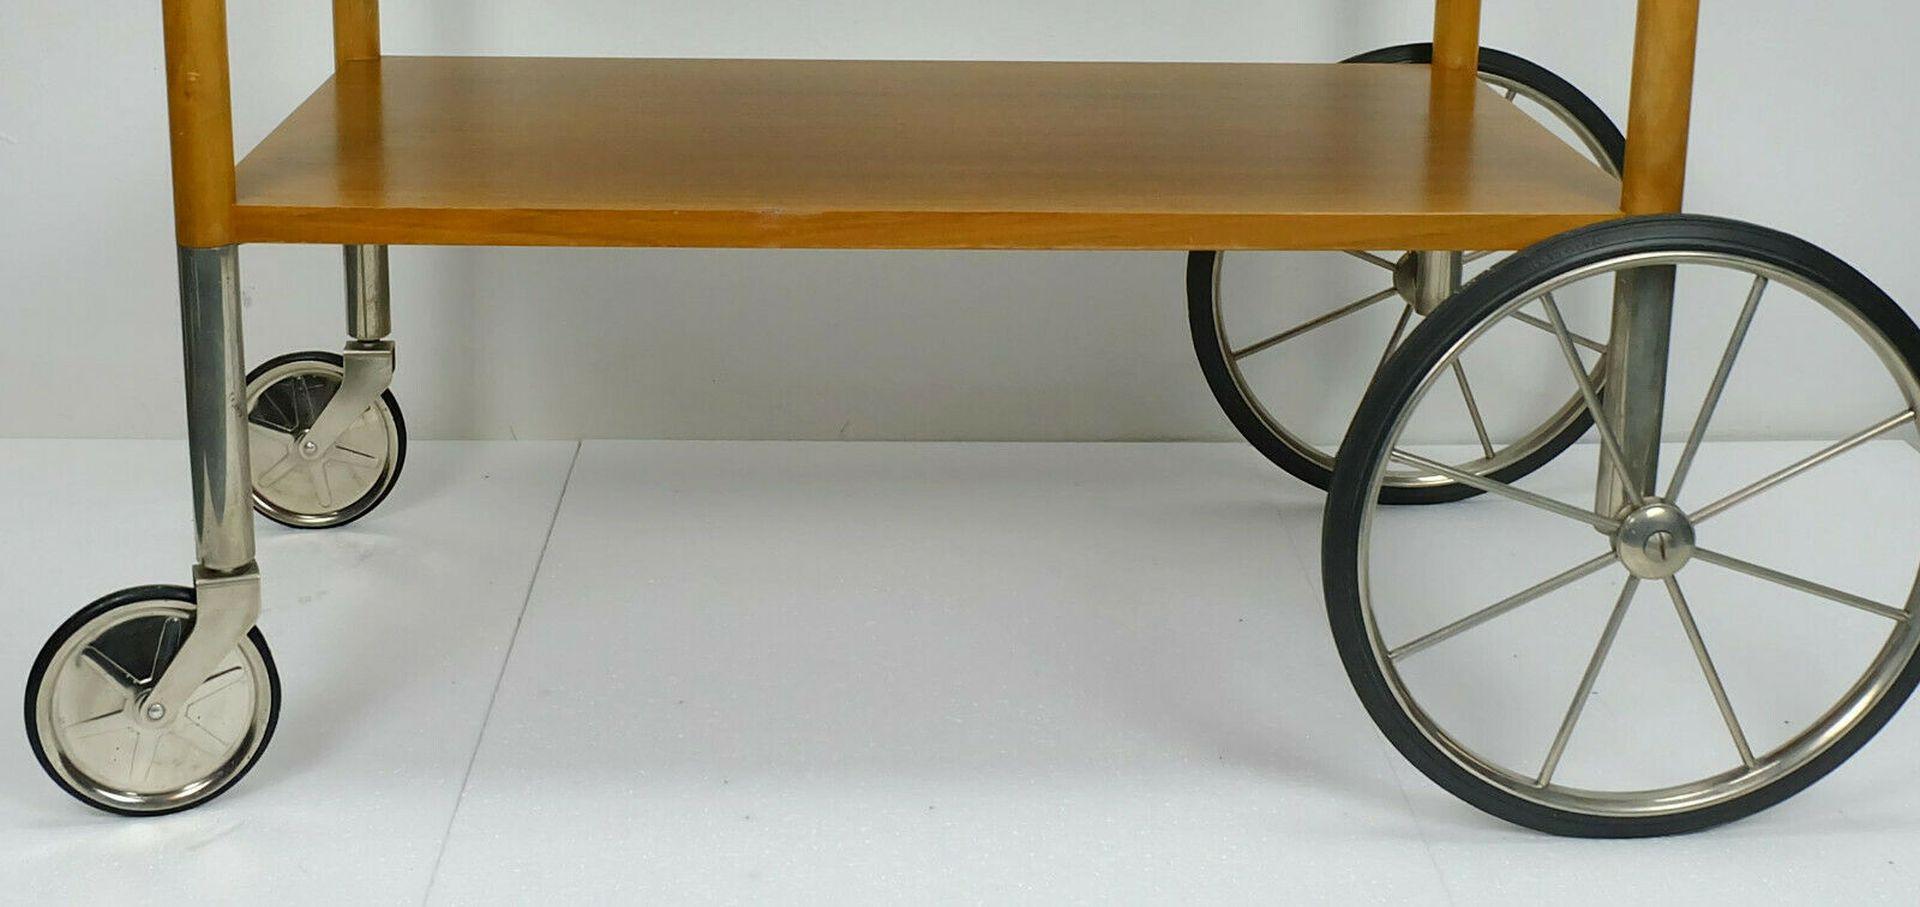 Seltener Teewagen aus den 1960er Jahren von der Wilhelm Renz Furniture Company. Hervorragendes Design mit 2 großen und 2 kleinen Rädern. Hergestellt aus Nussbaum (massiv und furniert) und vernickeltem Metall. Die Räder sind aus Metall und Gummi